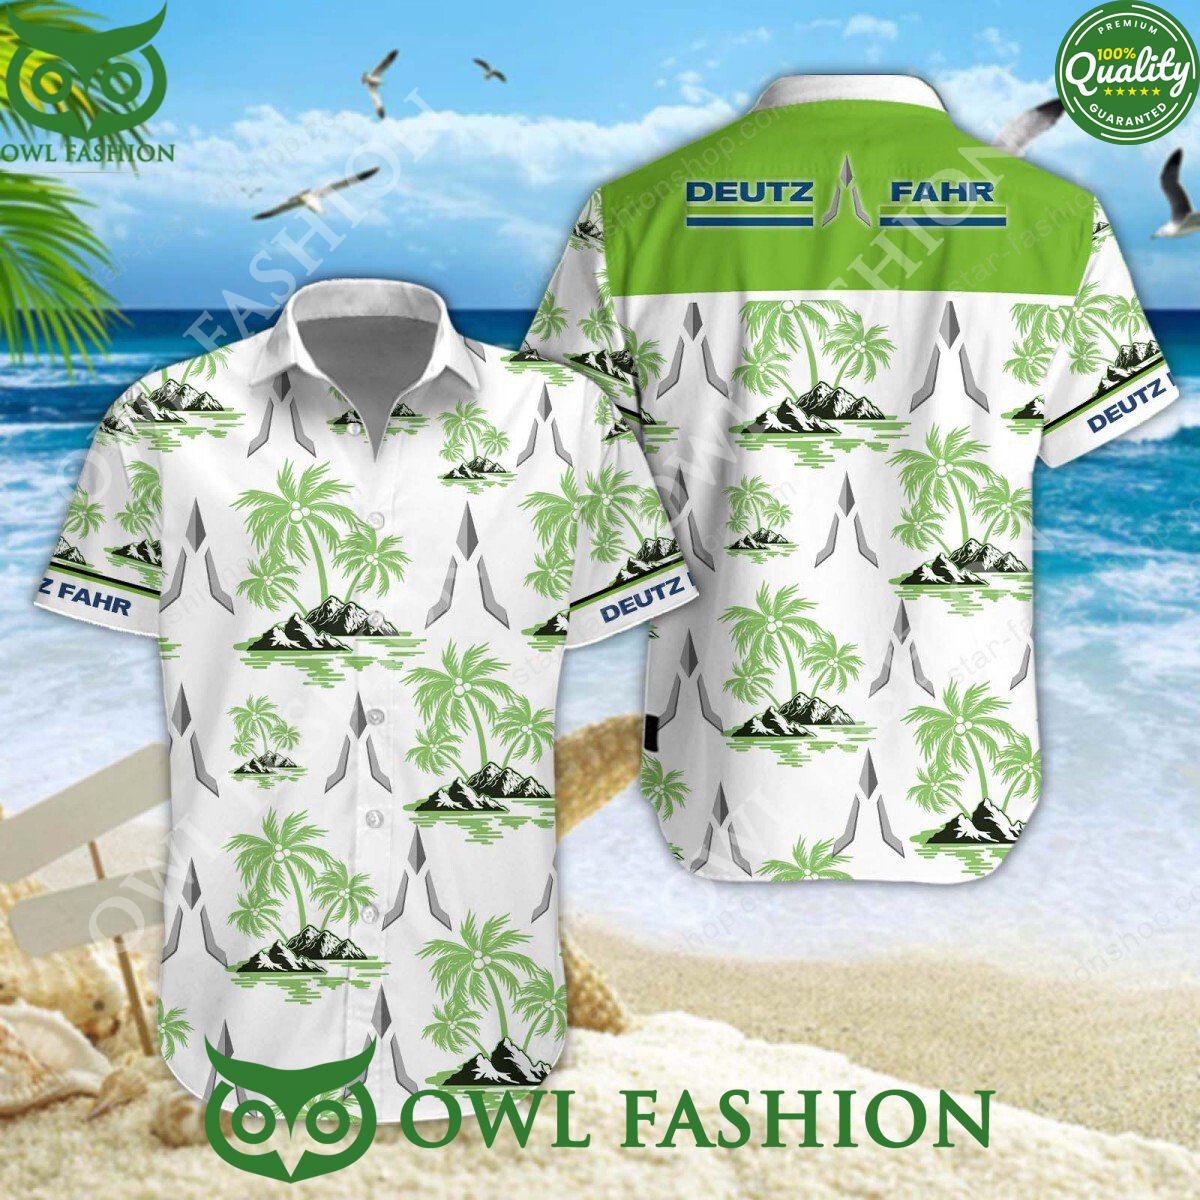 deutz fahr german agricultural machinery manufacturer hawaiian shirt and short 1 K5twq.jpg